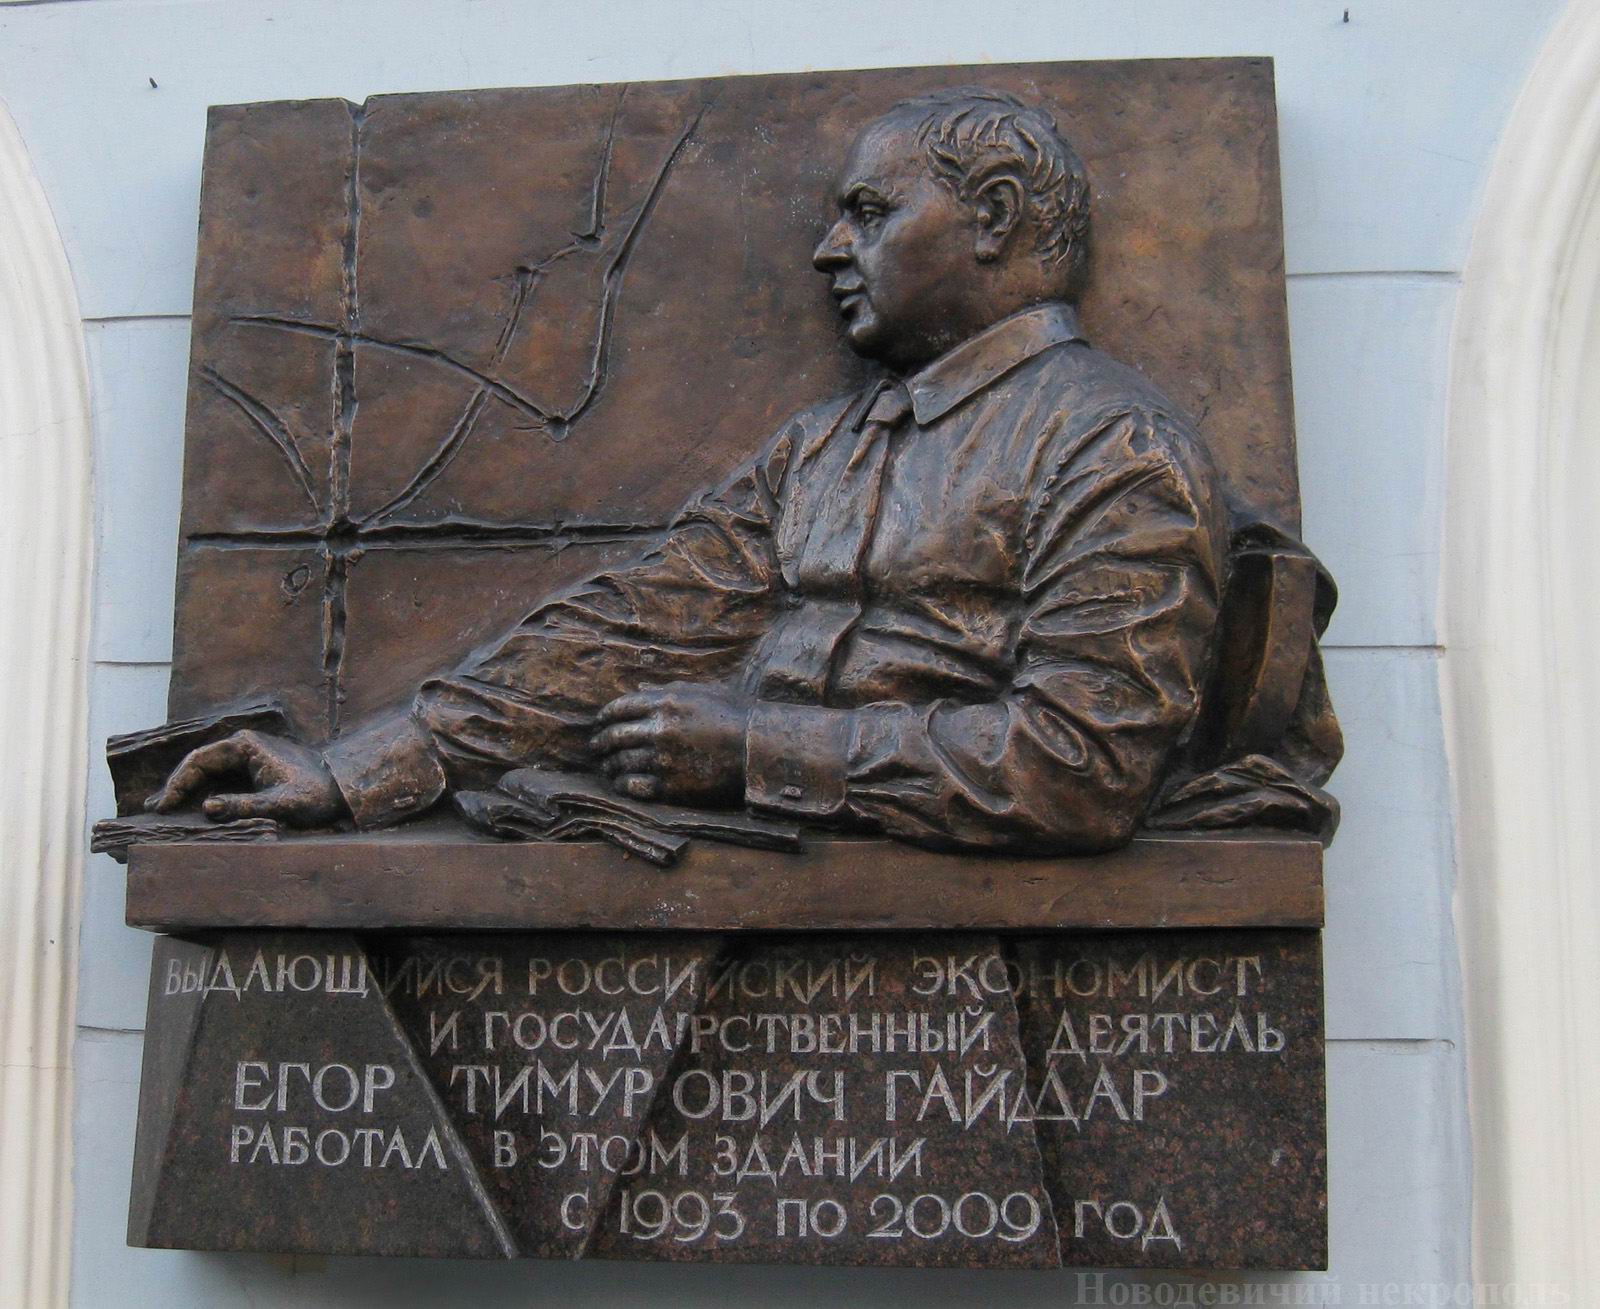 Мемориальная доска Гайдару Е.Т. (1956–2009), ск. М.В.Переяславец, арх. В.Б.Бухаев, в Газетном переулке, дом 5, открыта 19.3.2011.